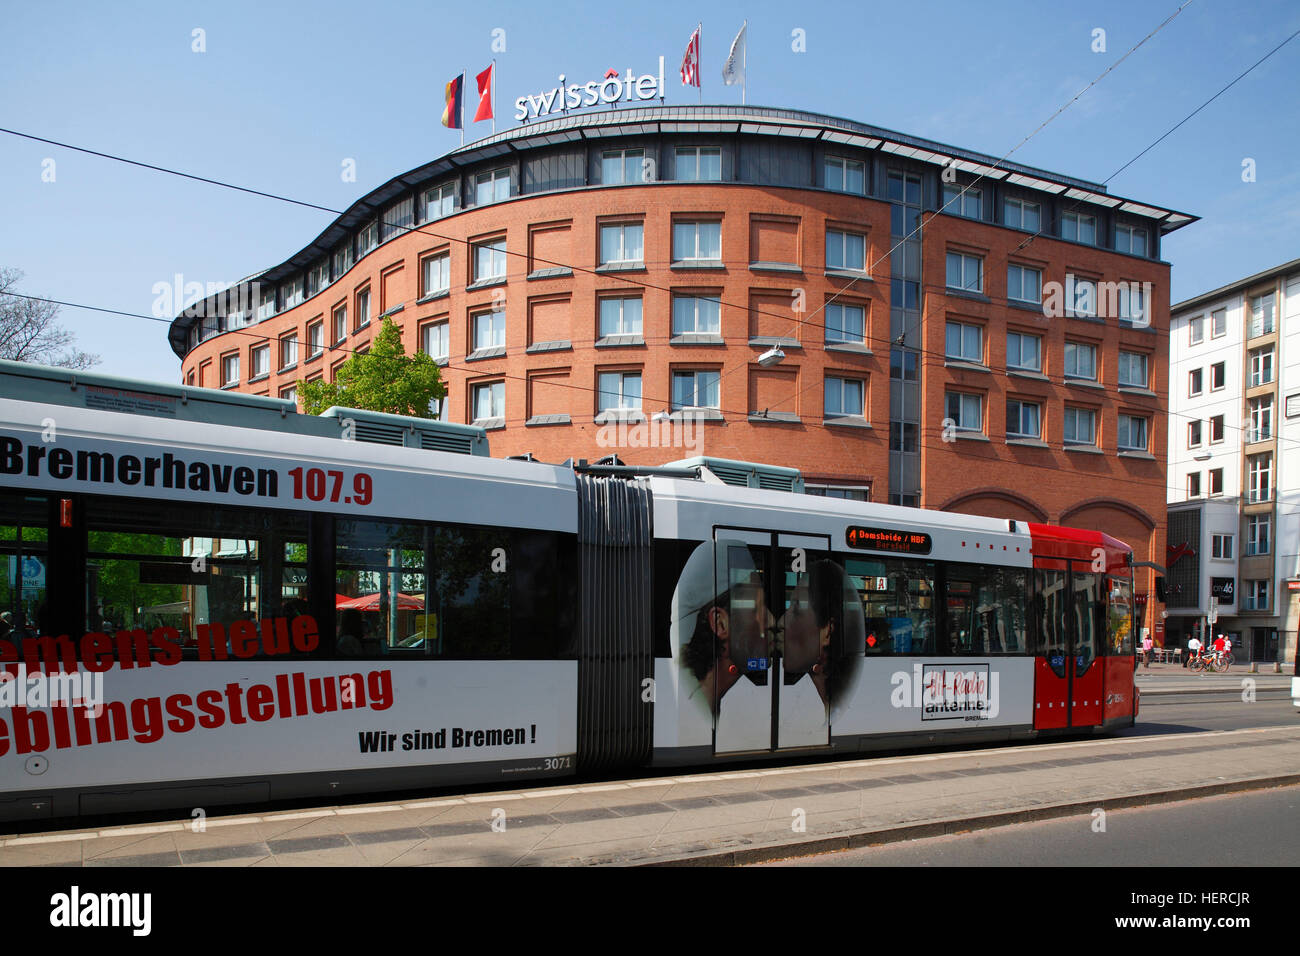 StraÃŸenbahn mit Hotel Swissotel an der Haltestelle Herdentor an der StraÃŸe Herdentorsteinweg, Bremen, Deutschland, Europa Stock Photo